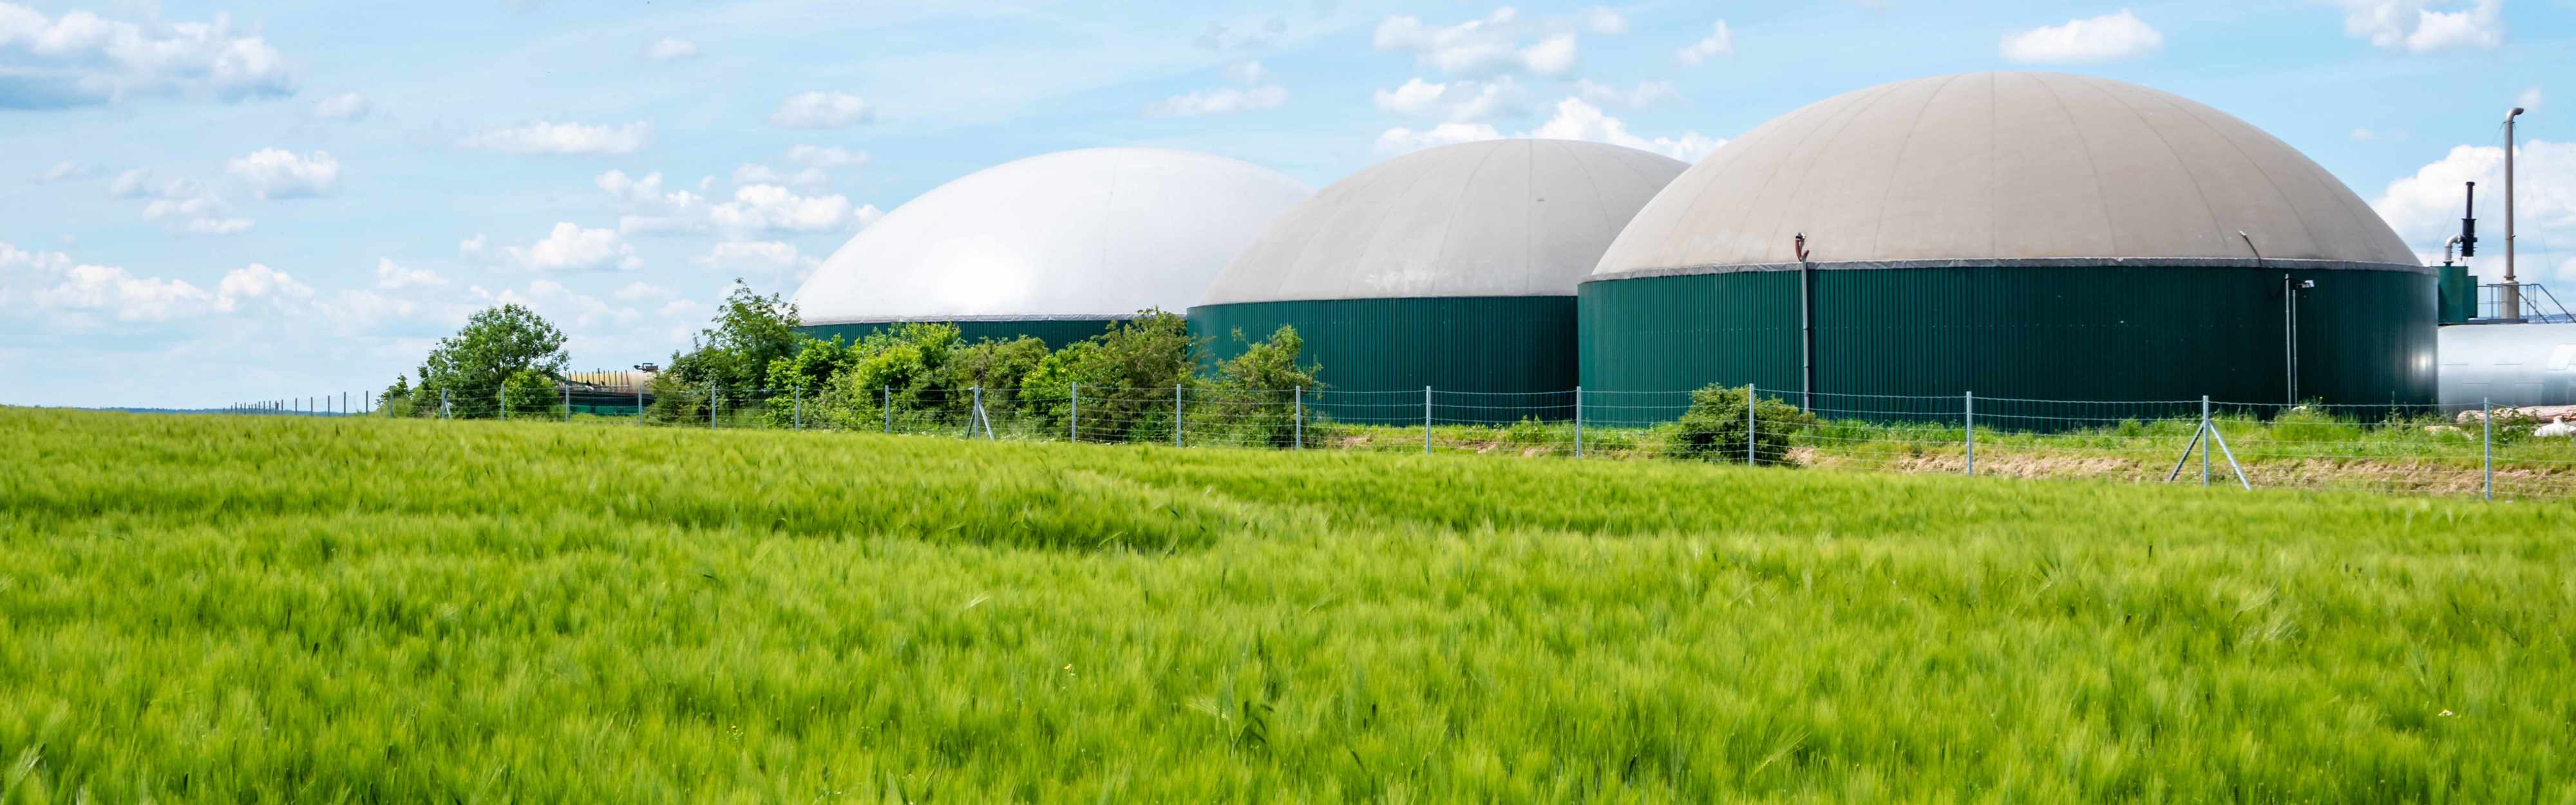 Grünes Getreidefeld vor einer Biogasanlage